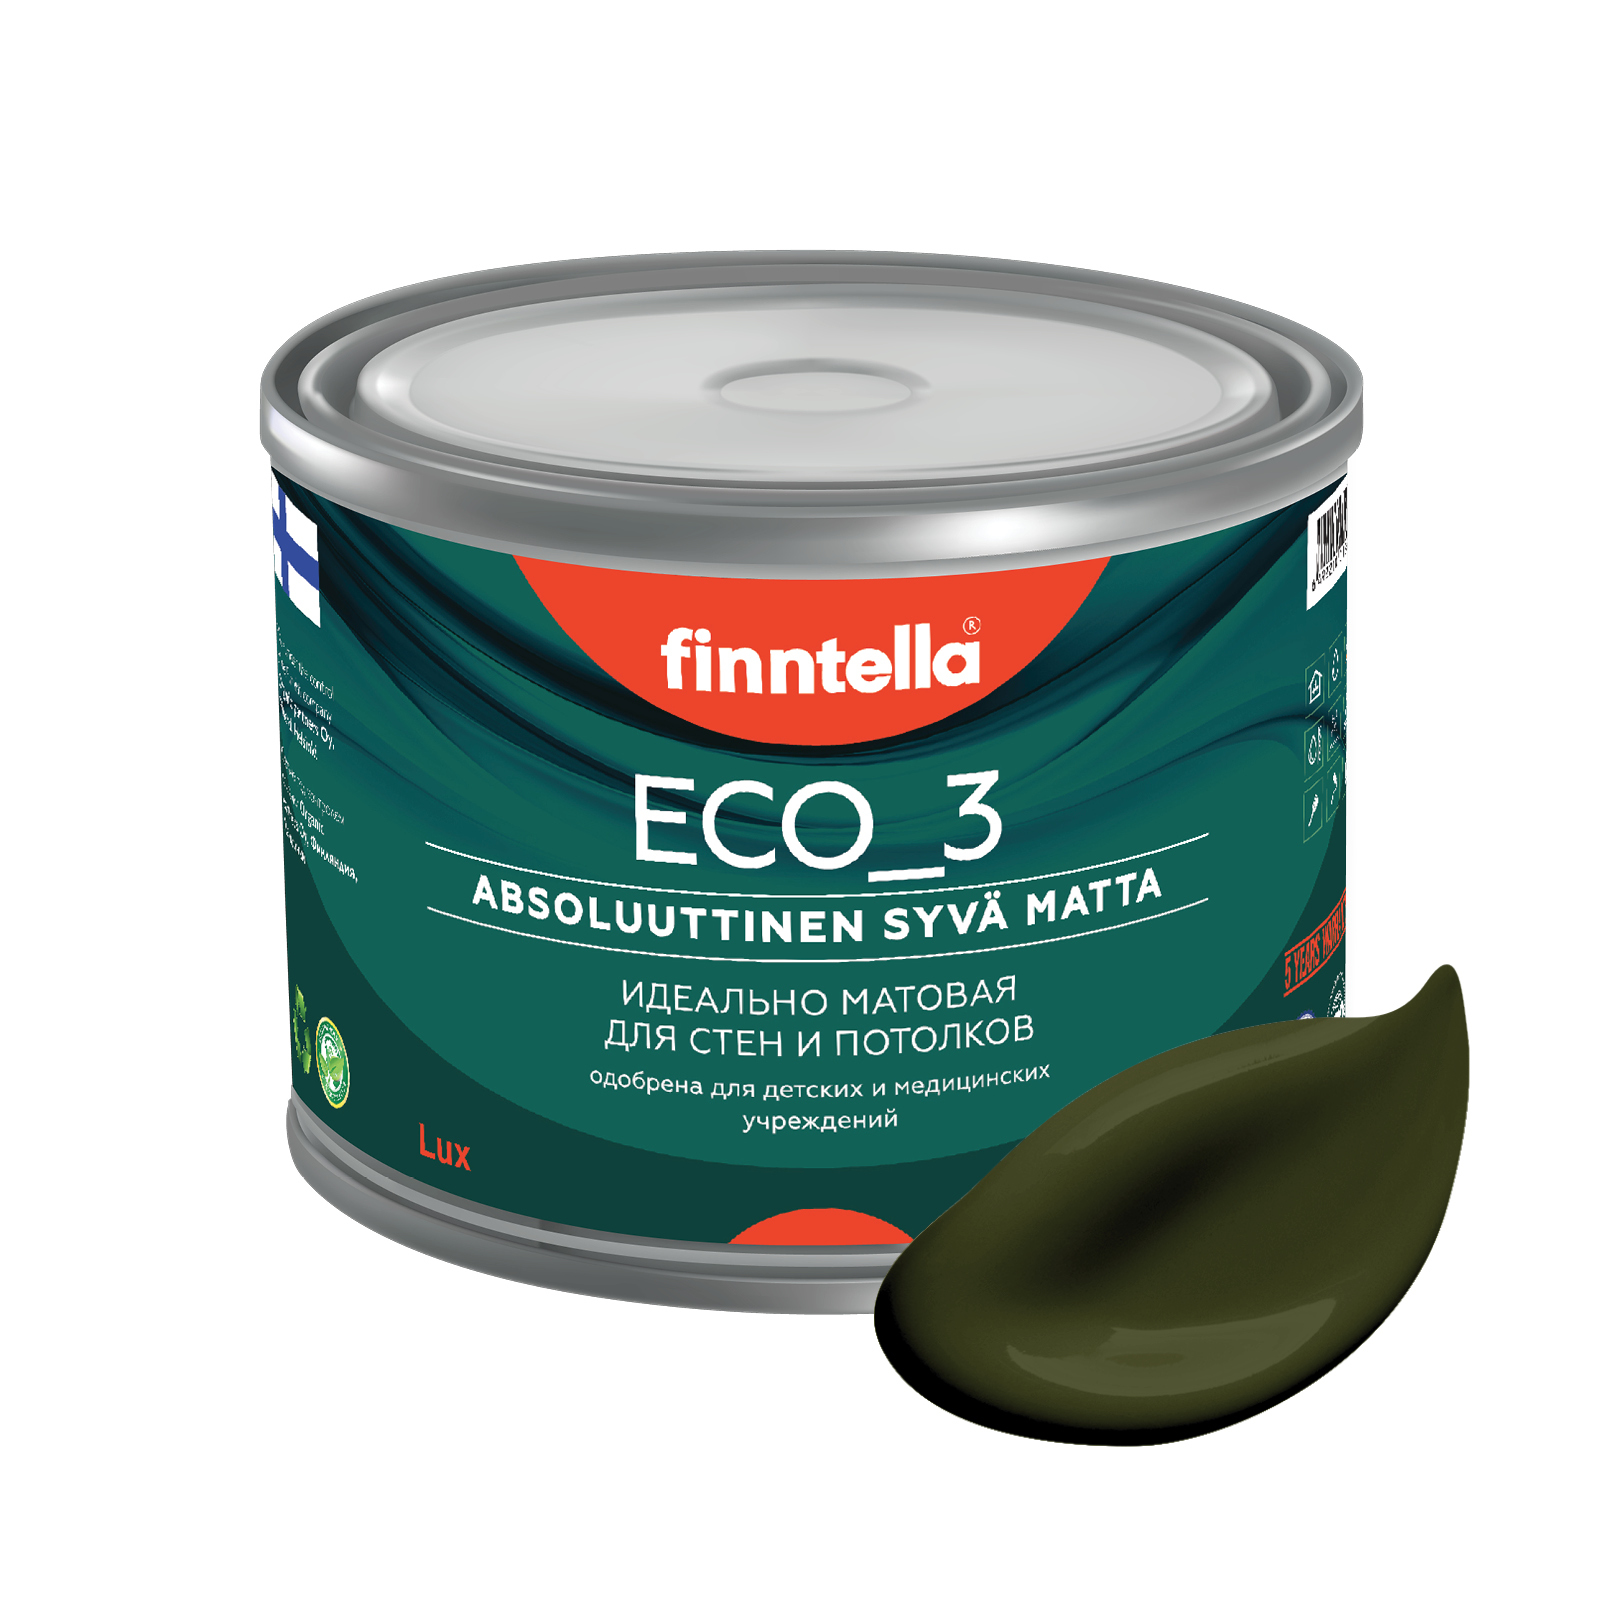 Краска FINNTELLA матовая для стен моющаяся ECO 3, для обоев под покраскуБыстросохнущая, Гладкая, Акриловая дисперсия, Водная, Матовое покрытие,бордовый, зеленый - купить в интернет-магазине OZON по выгодной цене(566655412)